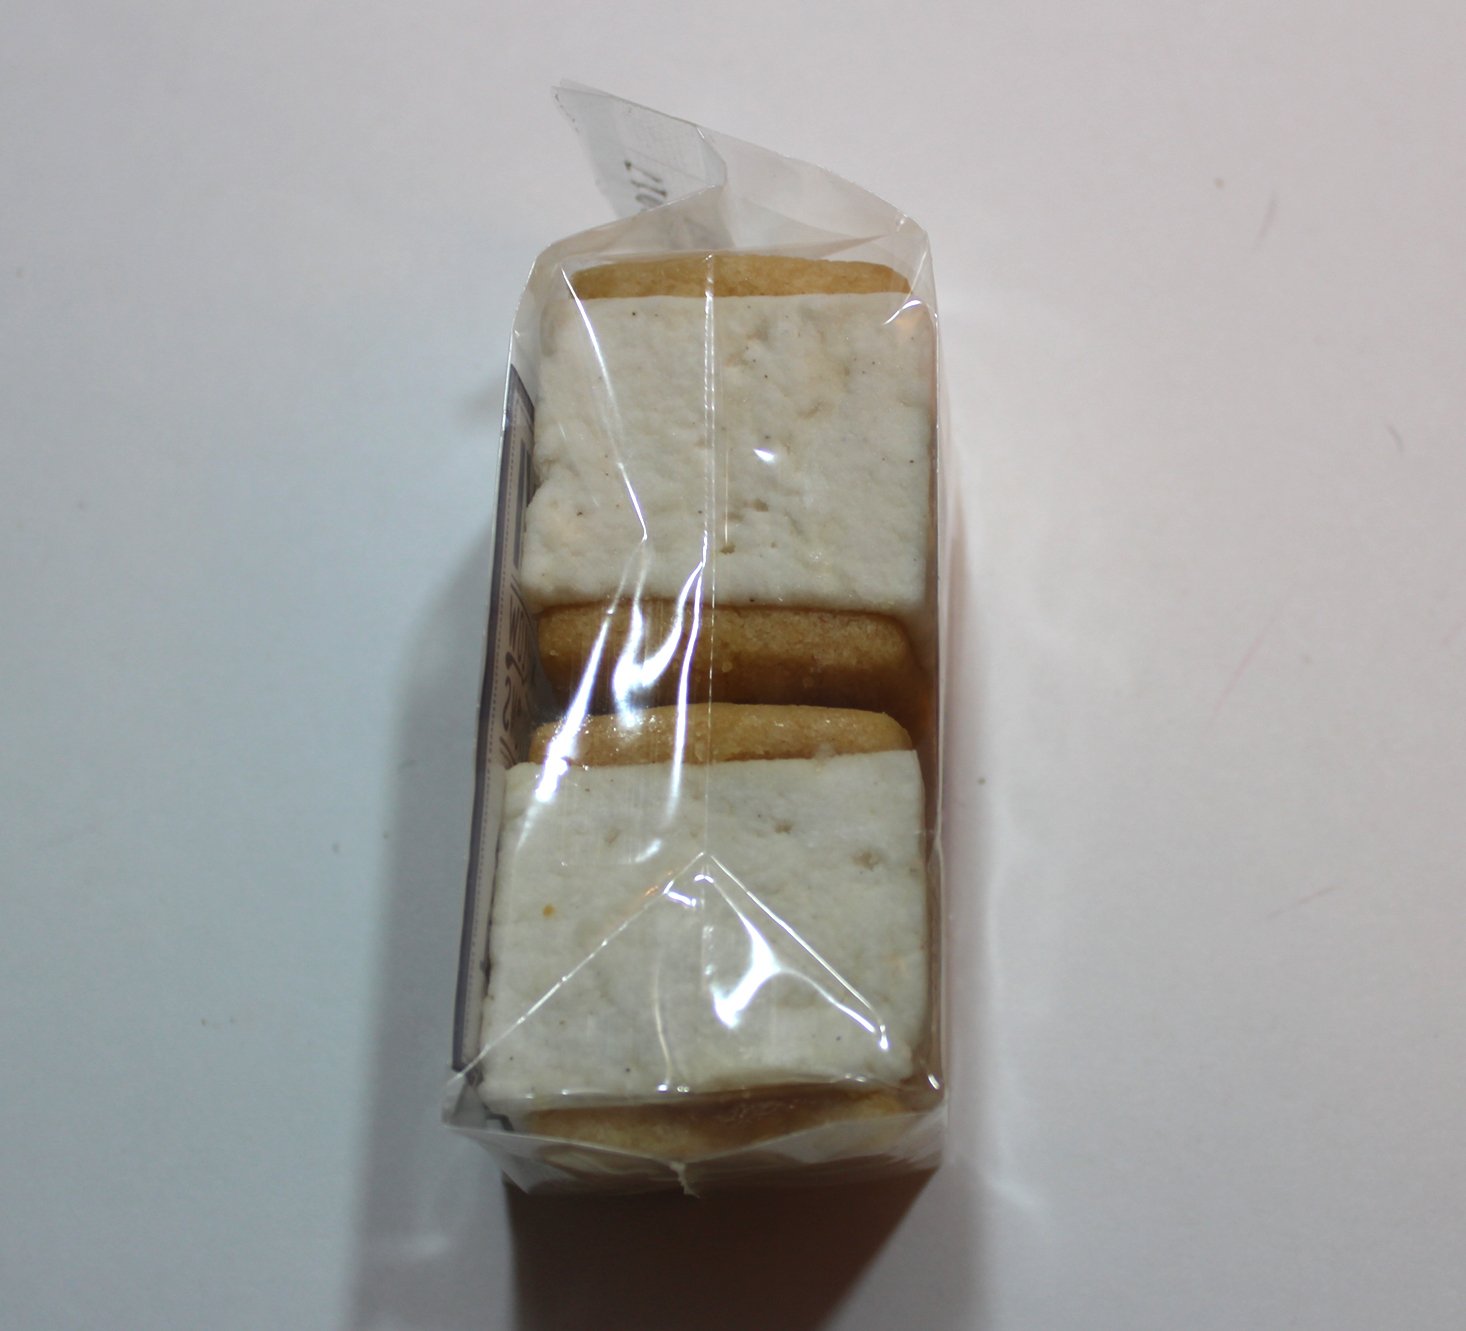 tea-box-express-january-2017-marshmallows2